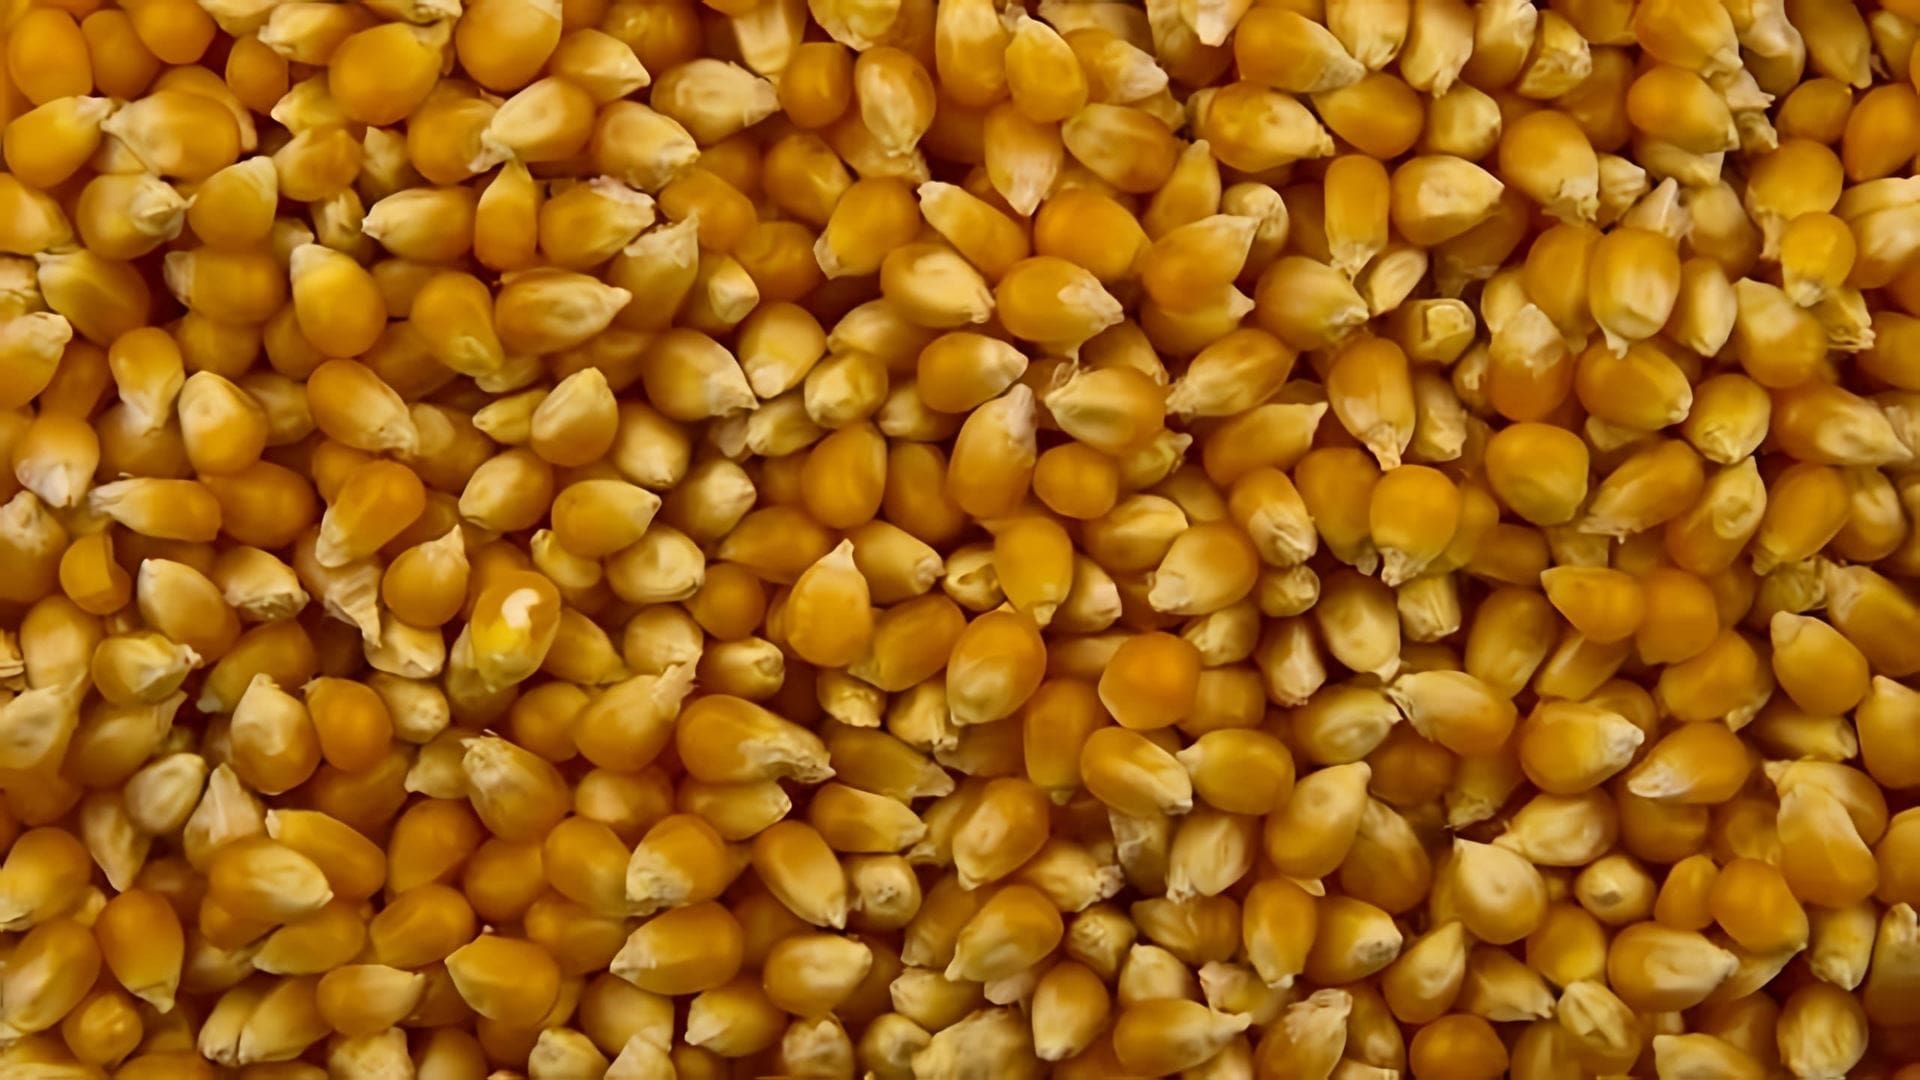 В данном видео демонстрируется процесс изготовления ферментированной кукурузы для ловли рыбы, в частности амура и карася